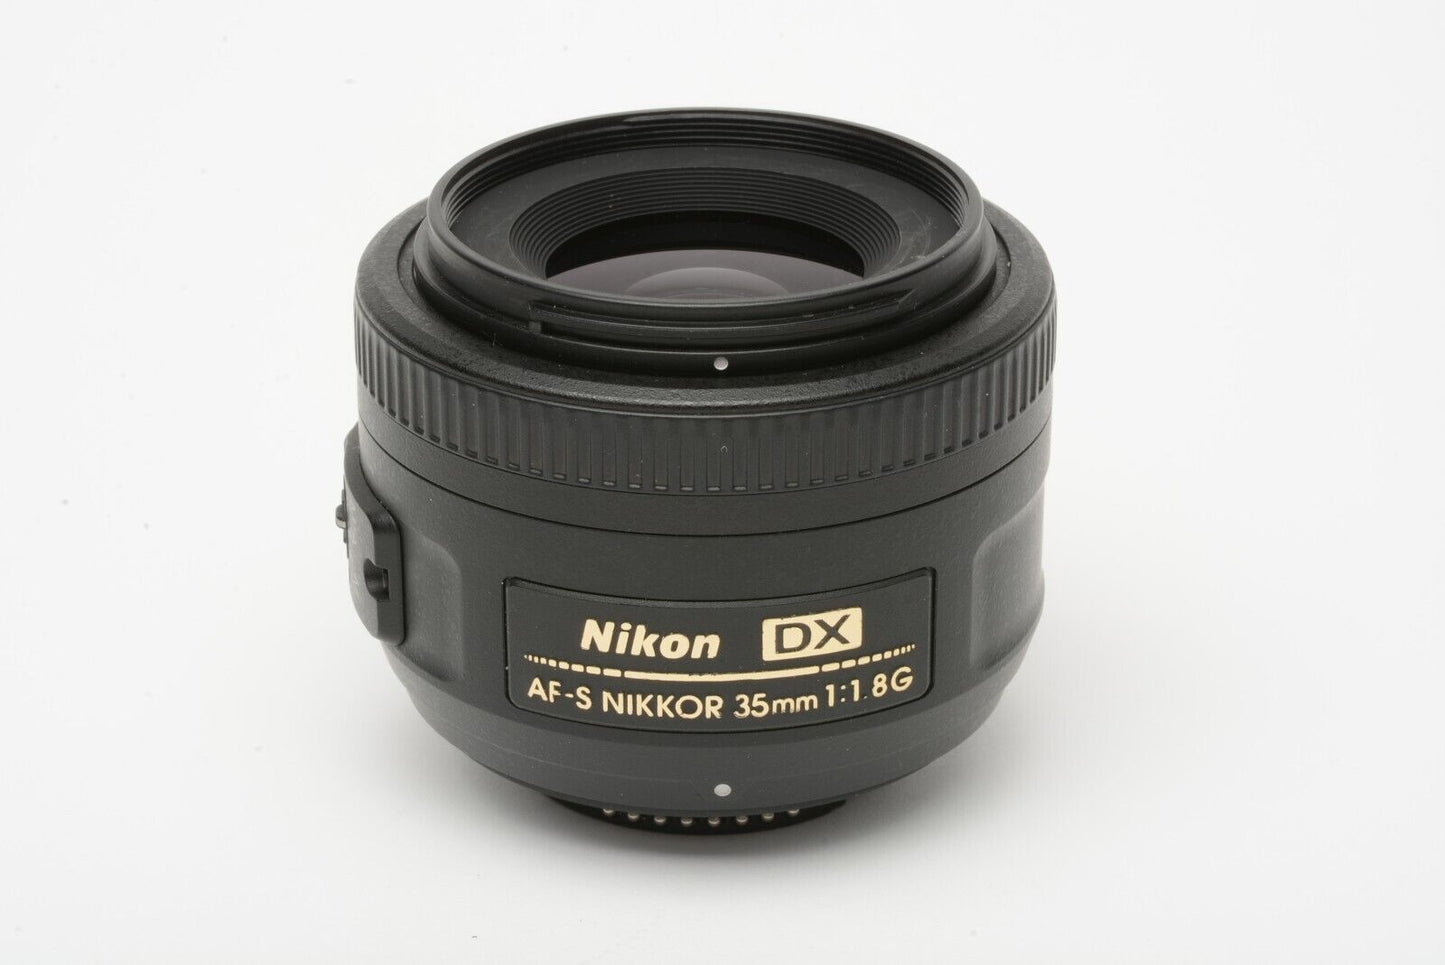 MINT- NIKON NIKKOR AF-S 35mm F1.8G DX WIDE ANGLE LENS, CLEAN +CAPS+UV+HOOD